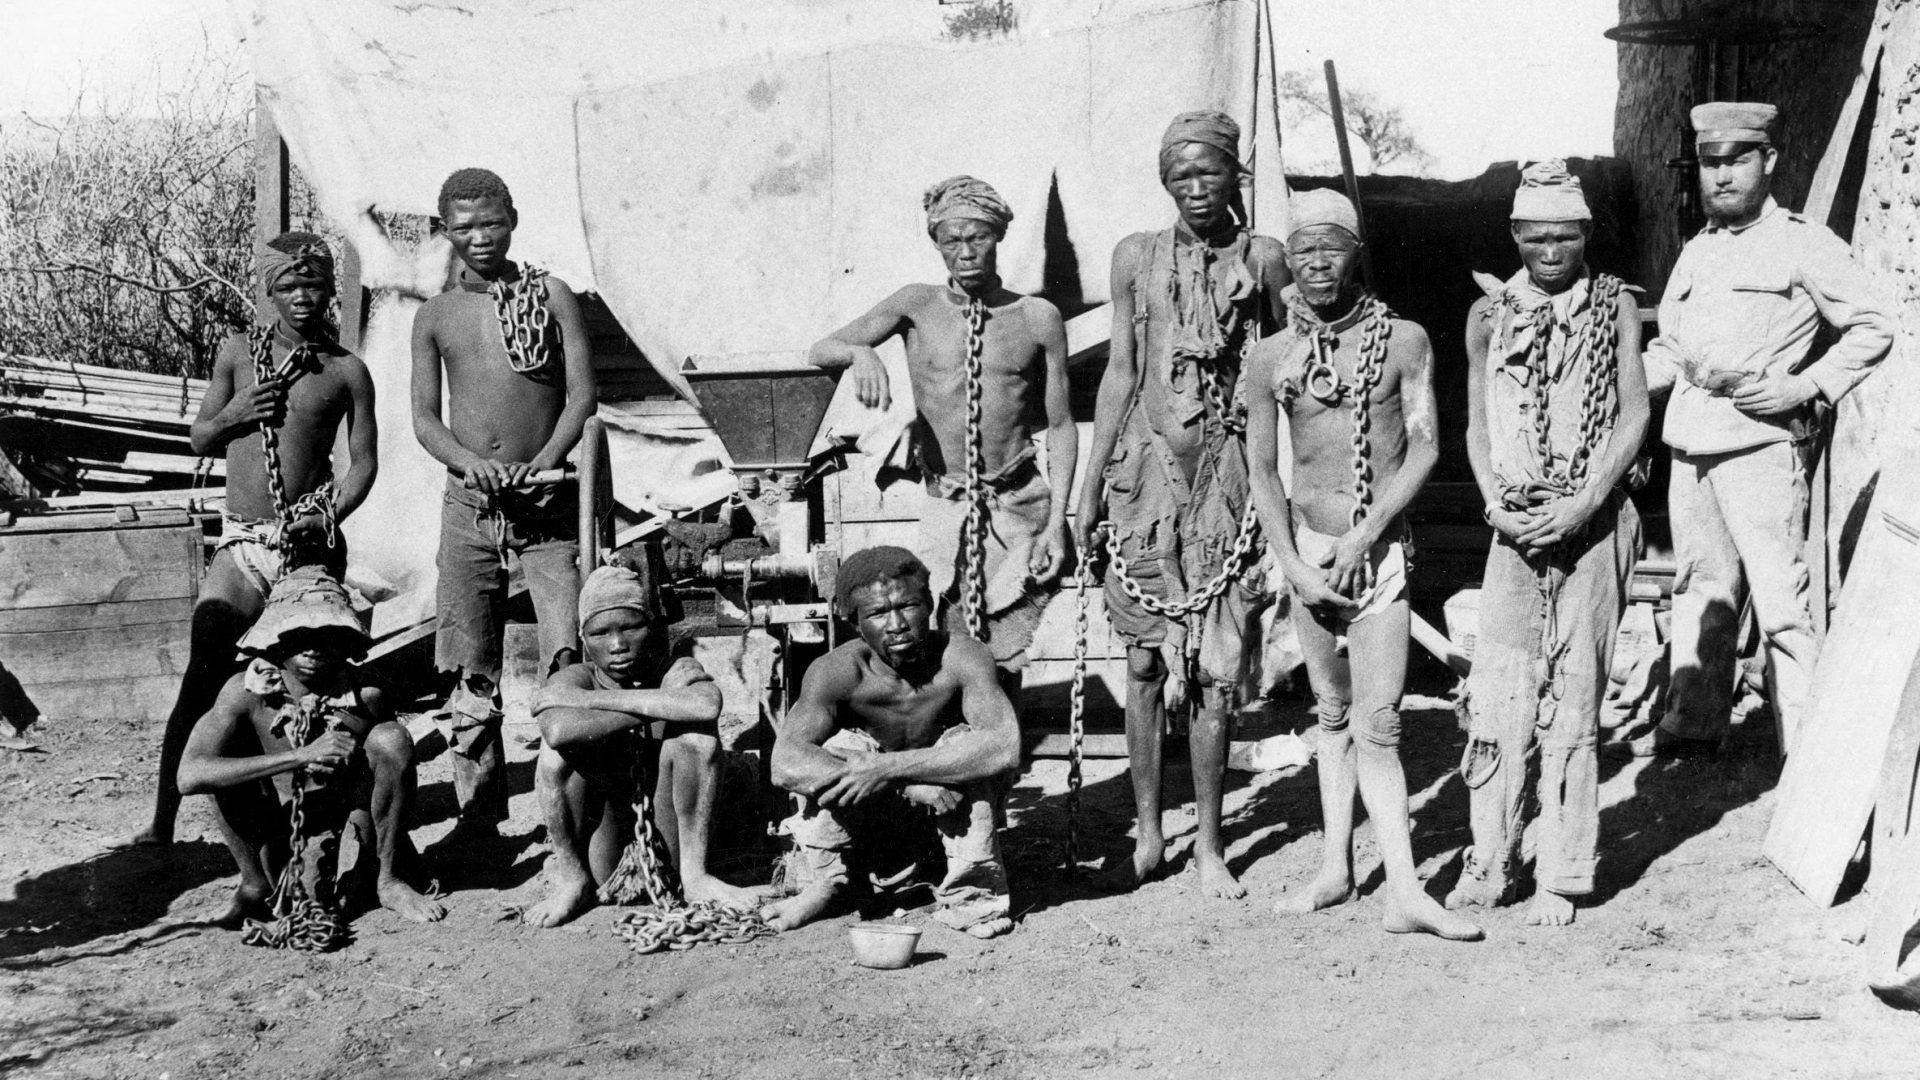 Mutmaßlich deutscher Soldat mit Gefangenen während des Kriegs gegen die Herero und Nama von 1904-1908